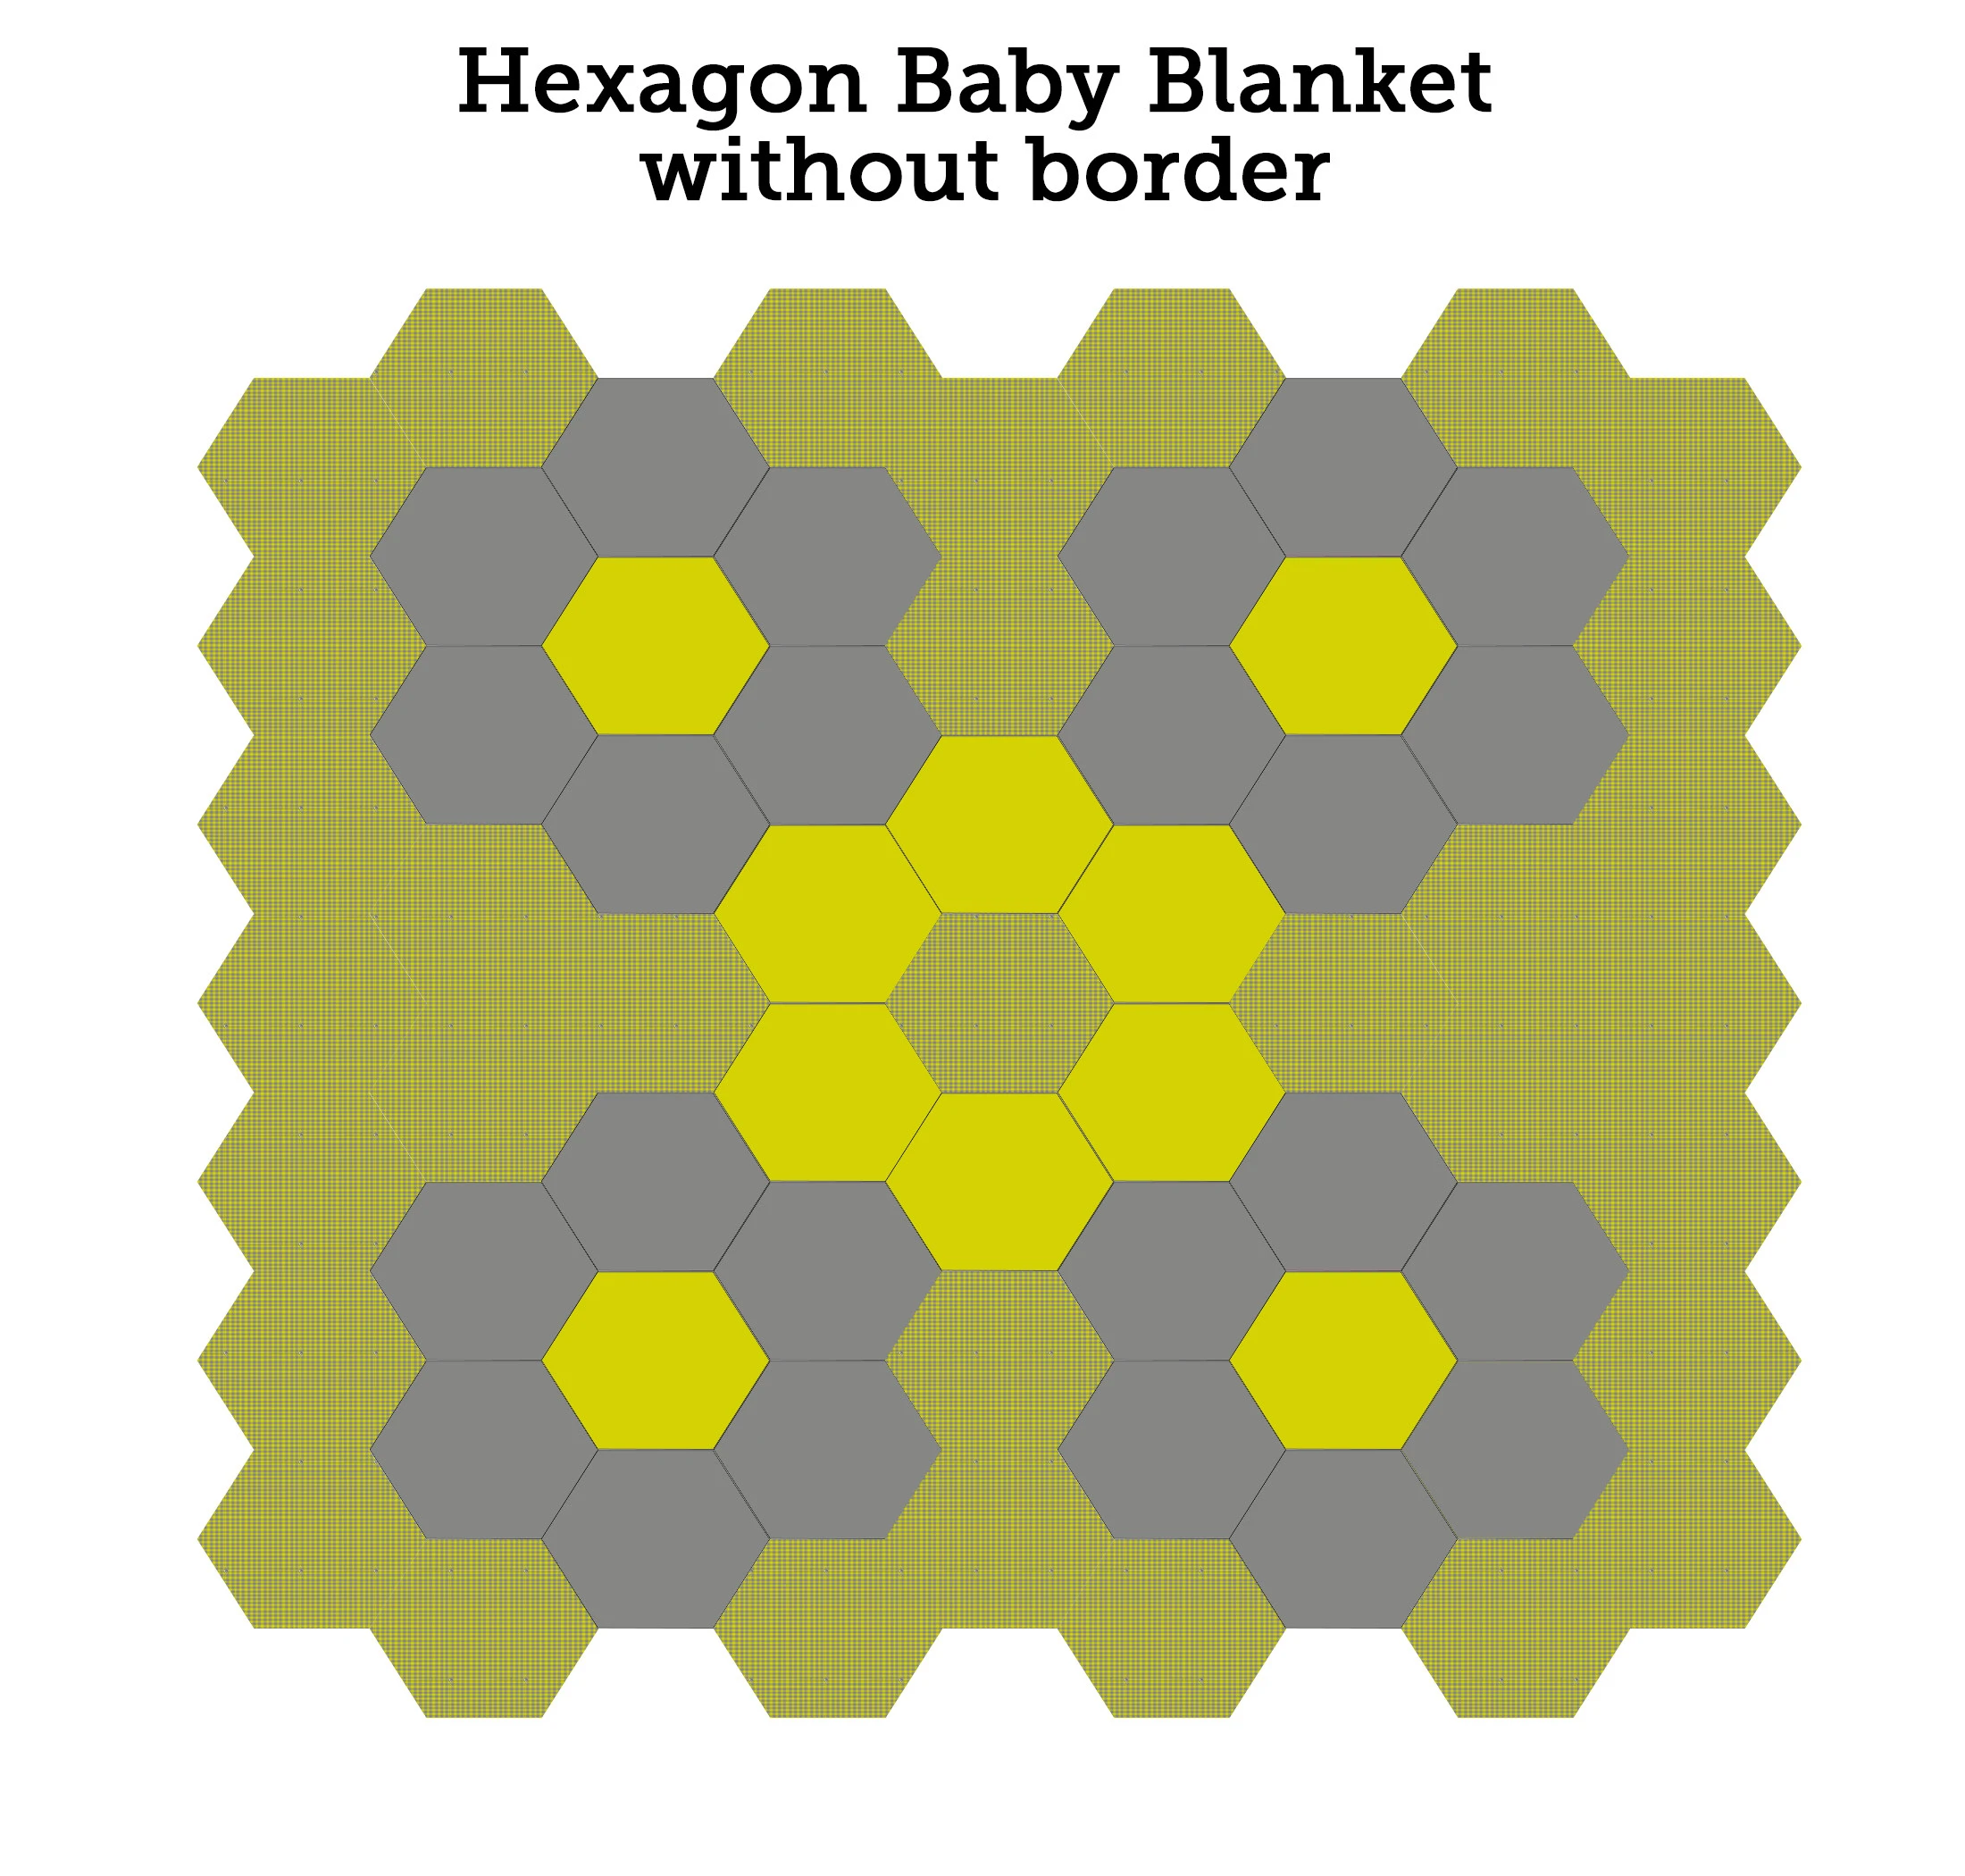 hexagon baby blanket no border schematic